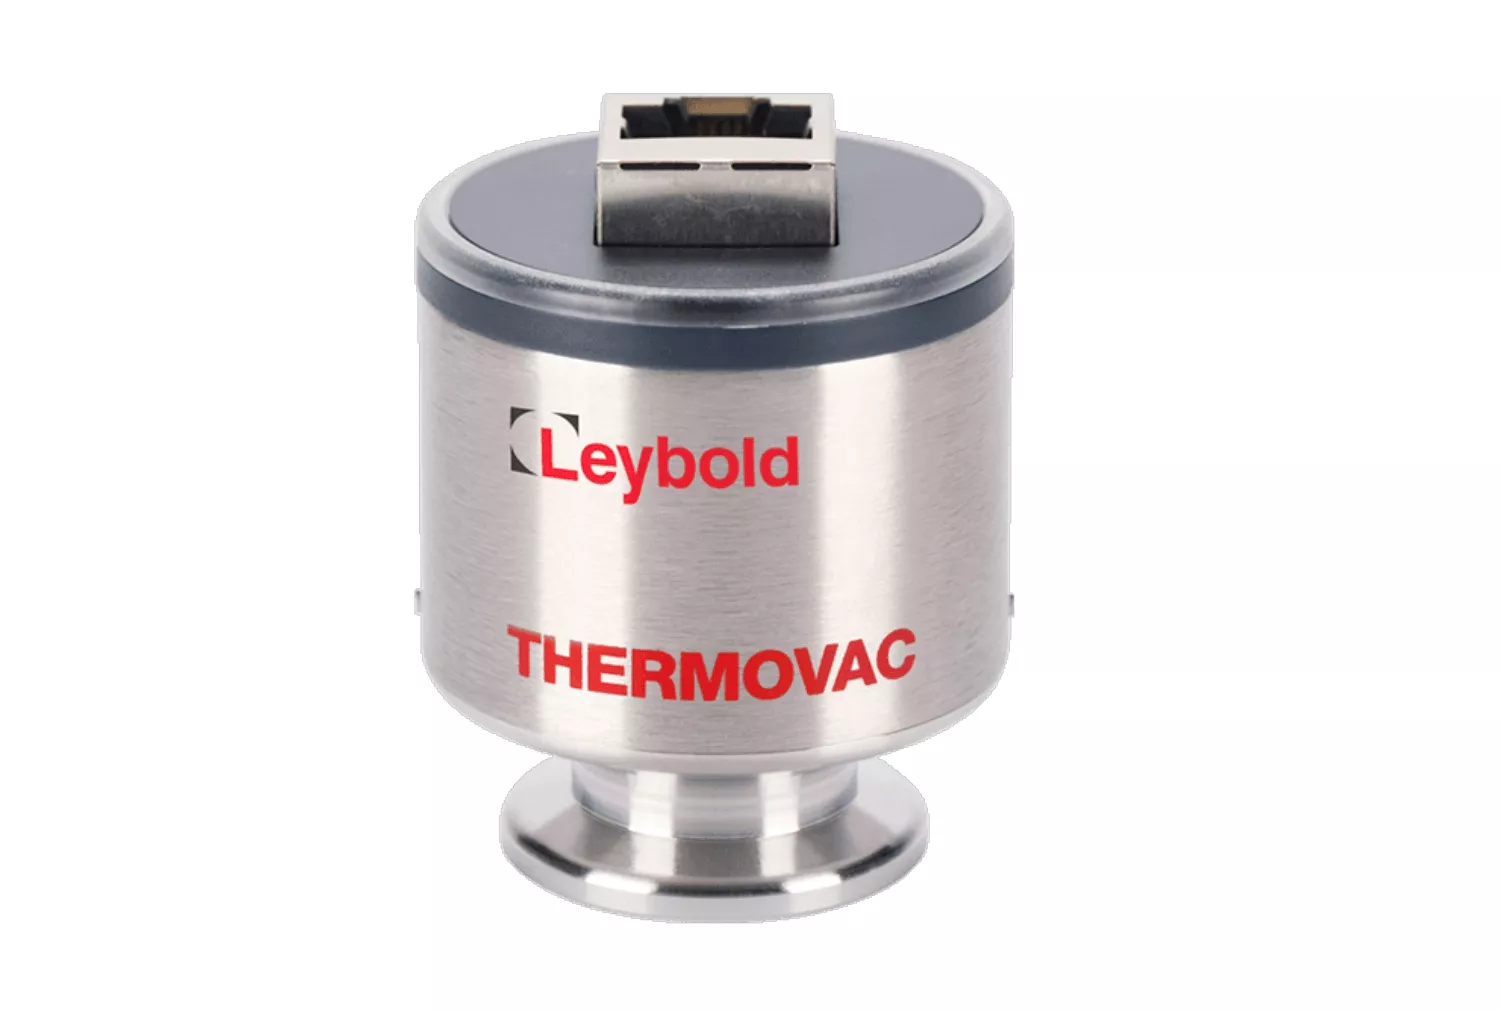 Купить в АО Вакууммаш ✓ Активный датчик THERMOVAC TTR 101 N (S) Leybold по цене производителя